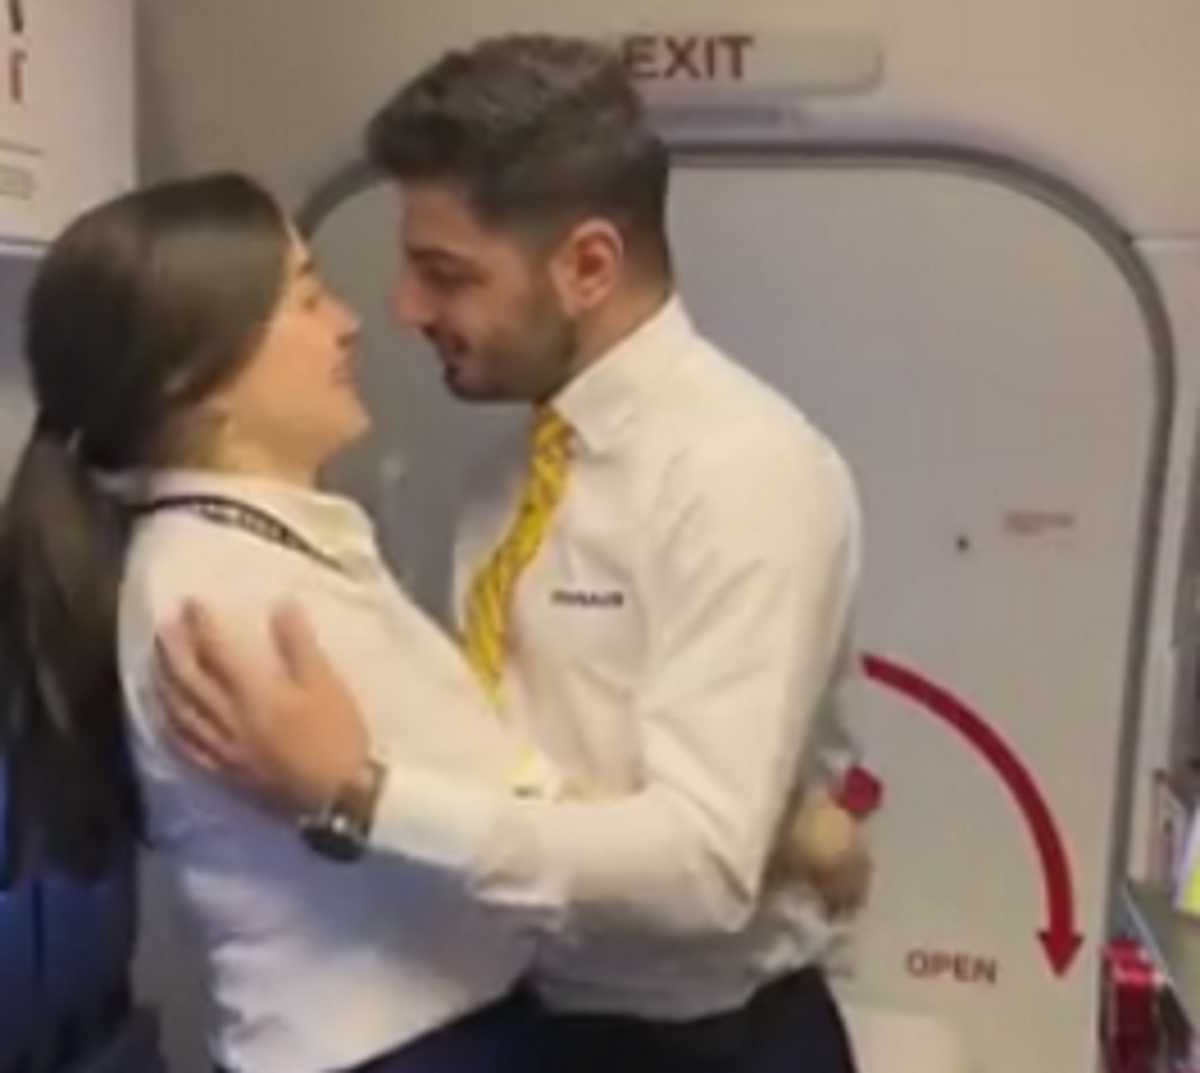 Κορονοϊός: Δύσκολοι καιροί για έρωτες! Απίθανες σκηνές στην καμπίνα αεροπλάνου (Βίντεο)